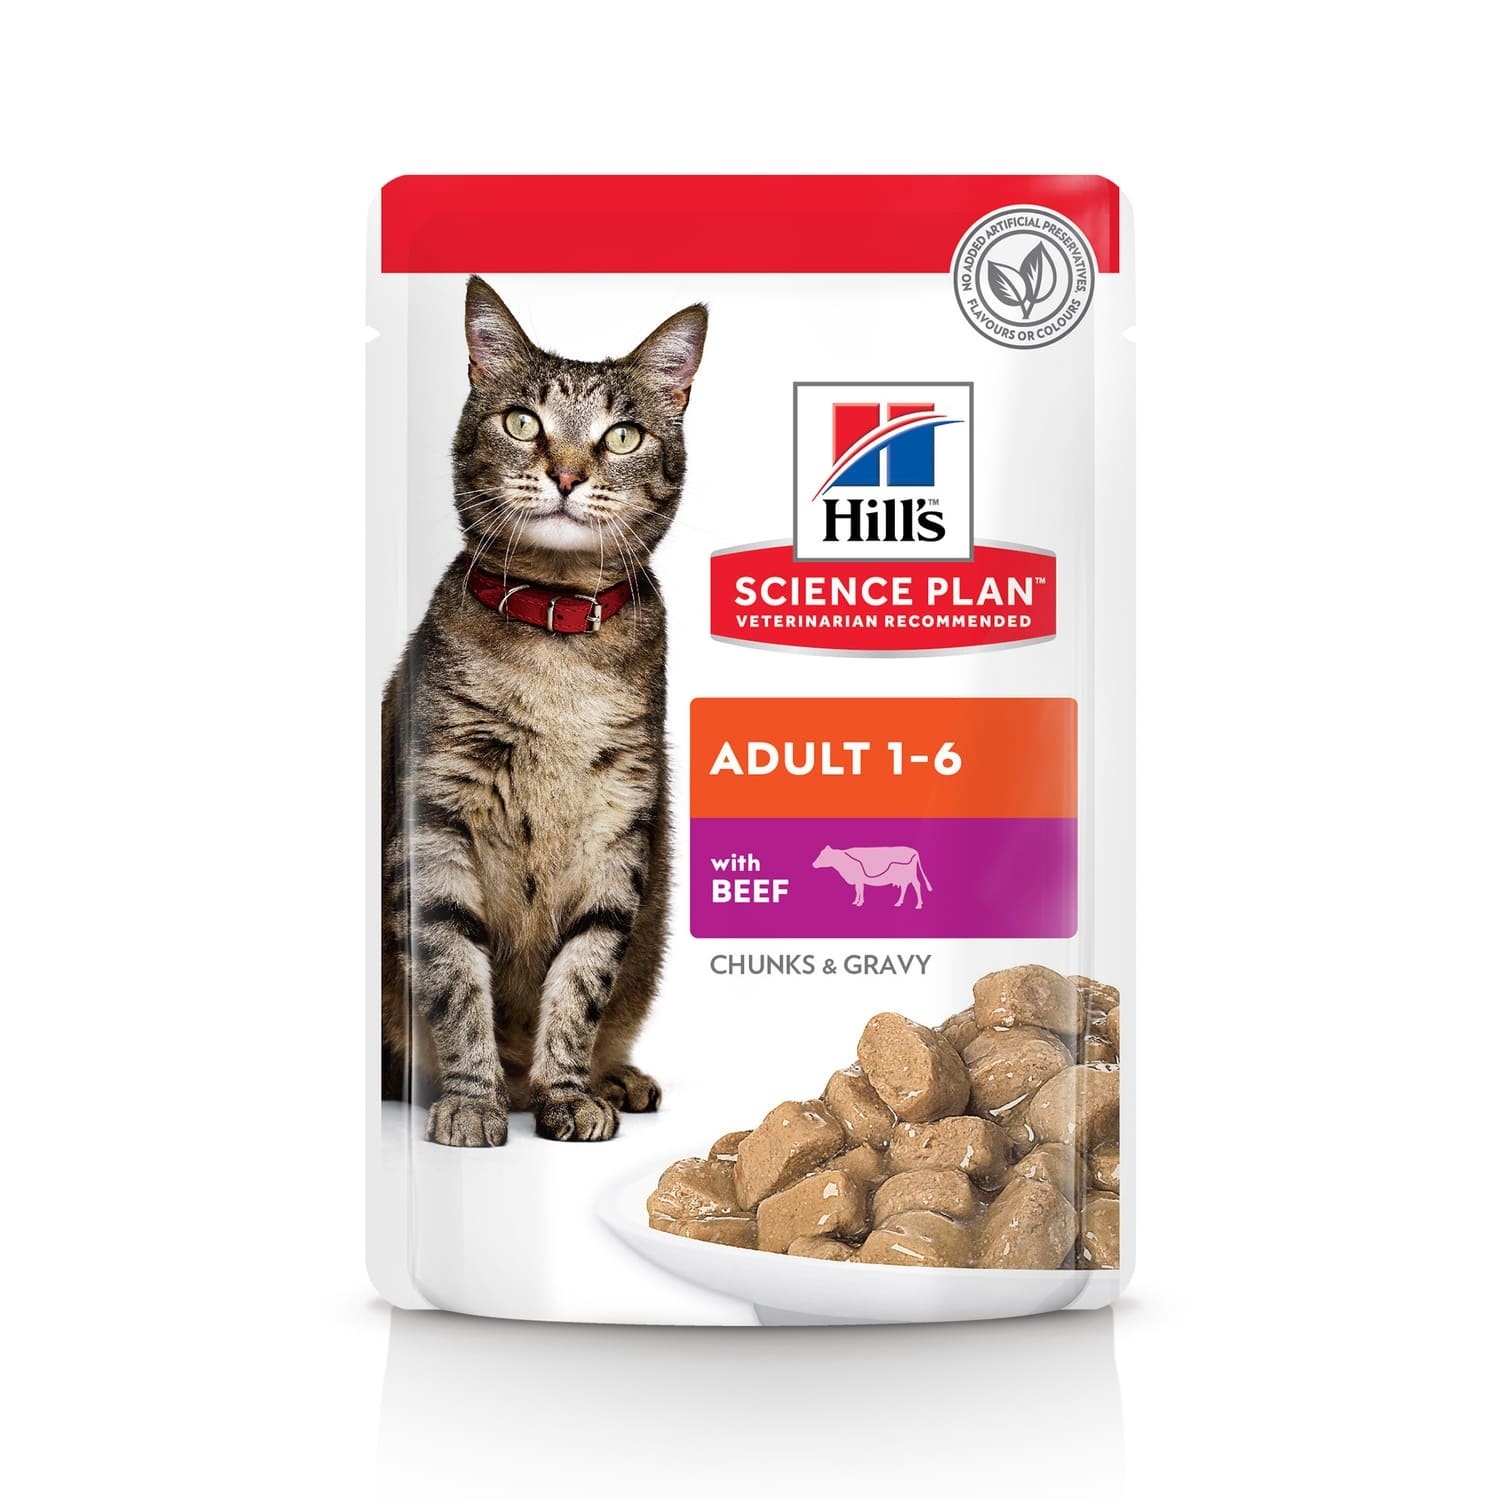 Hill's консервы для взрослых кошек для поддержания жизненной энергии и иммунитета, пауч с говядиной в соусе (85 г)